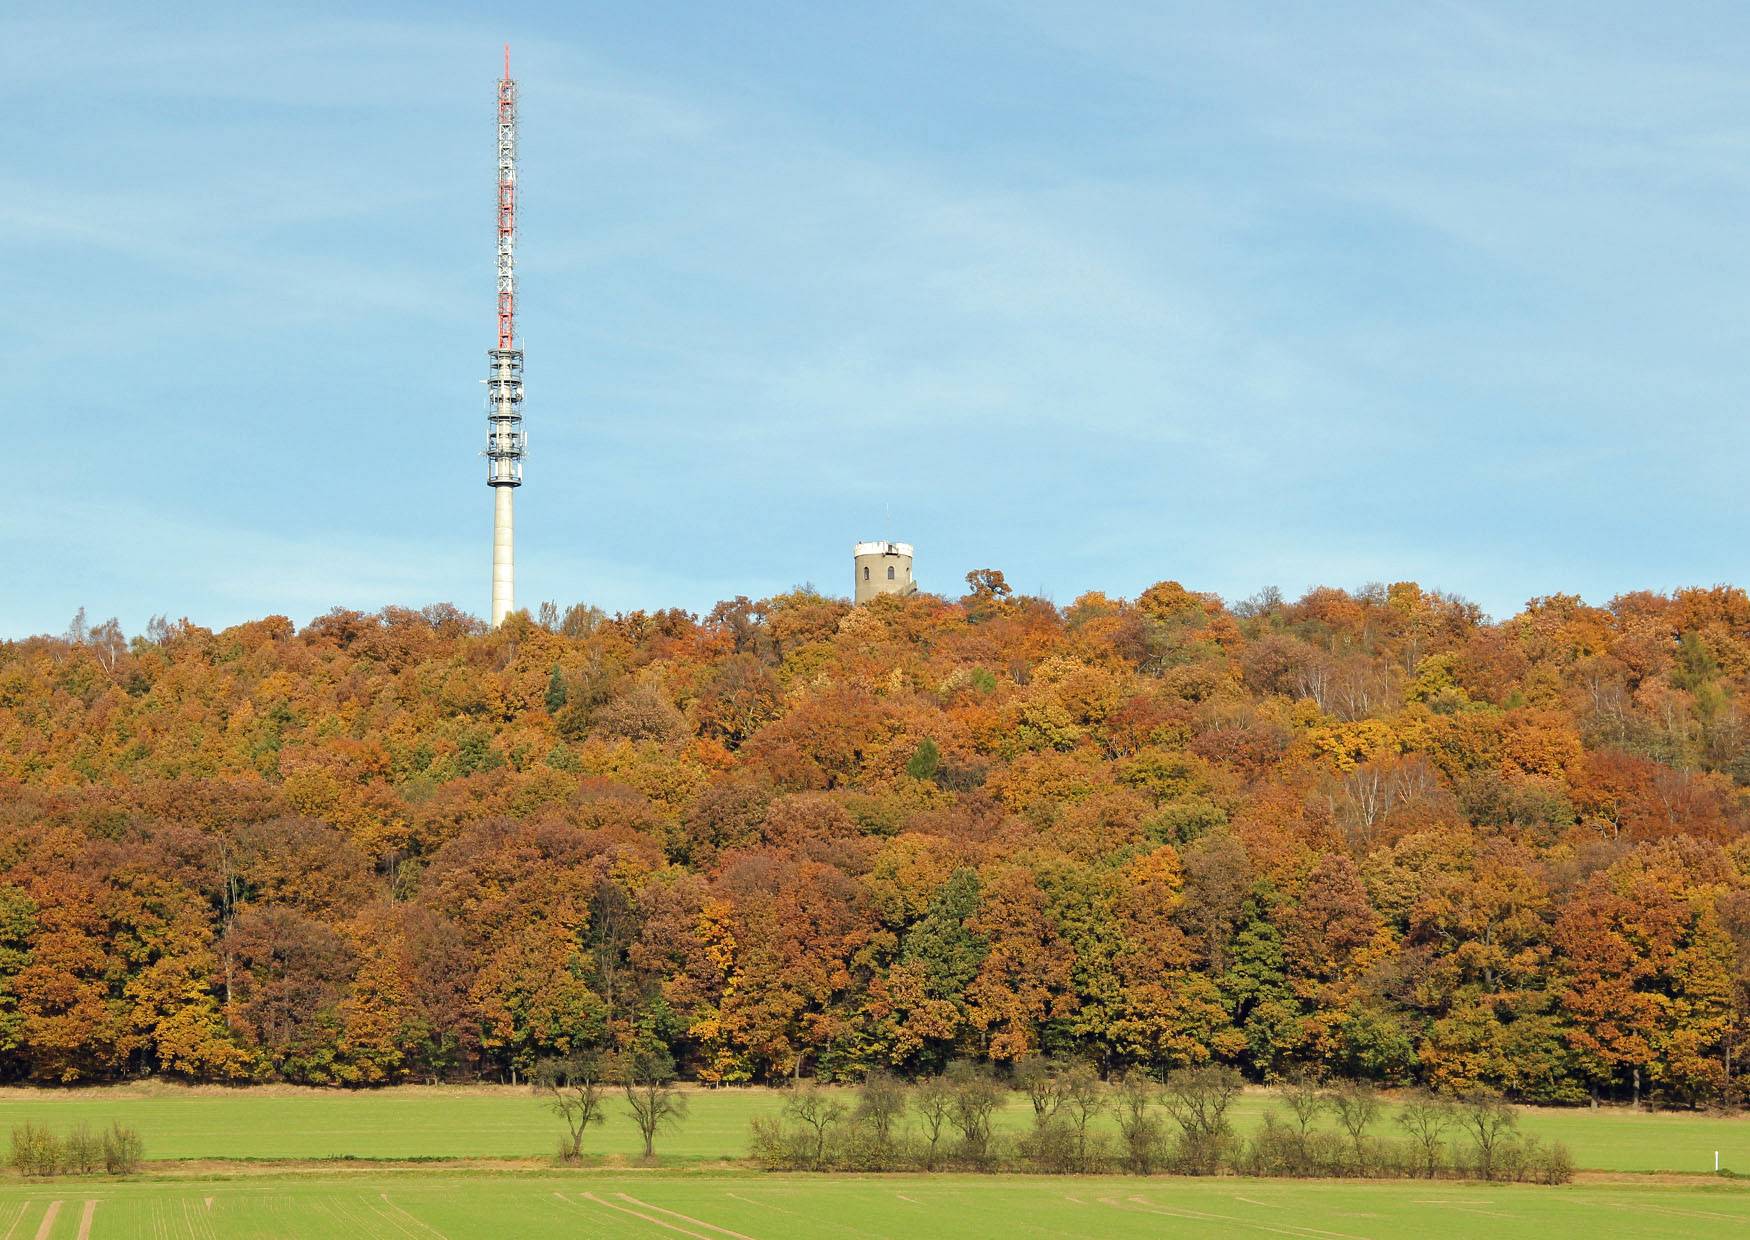 Collmberg 312 Meter mit Aussichtsturm